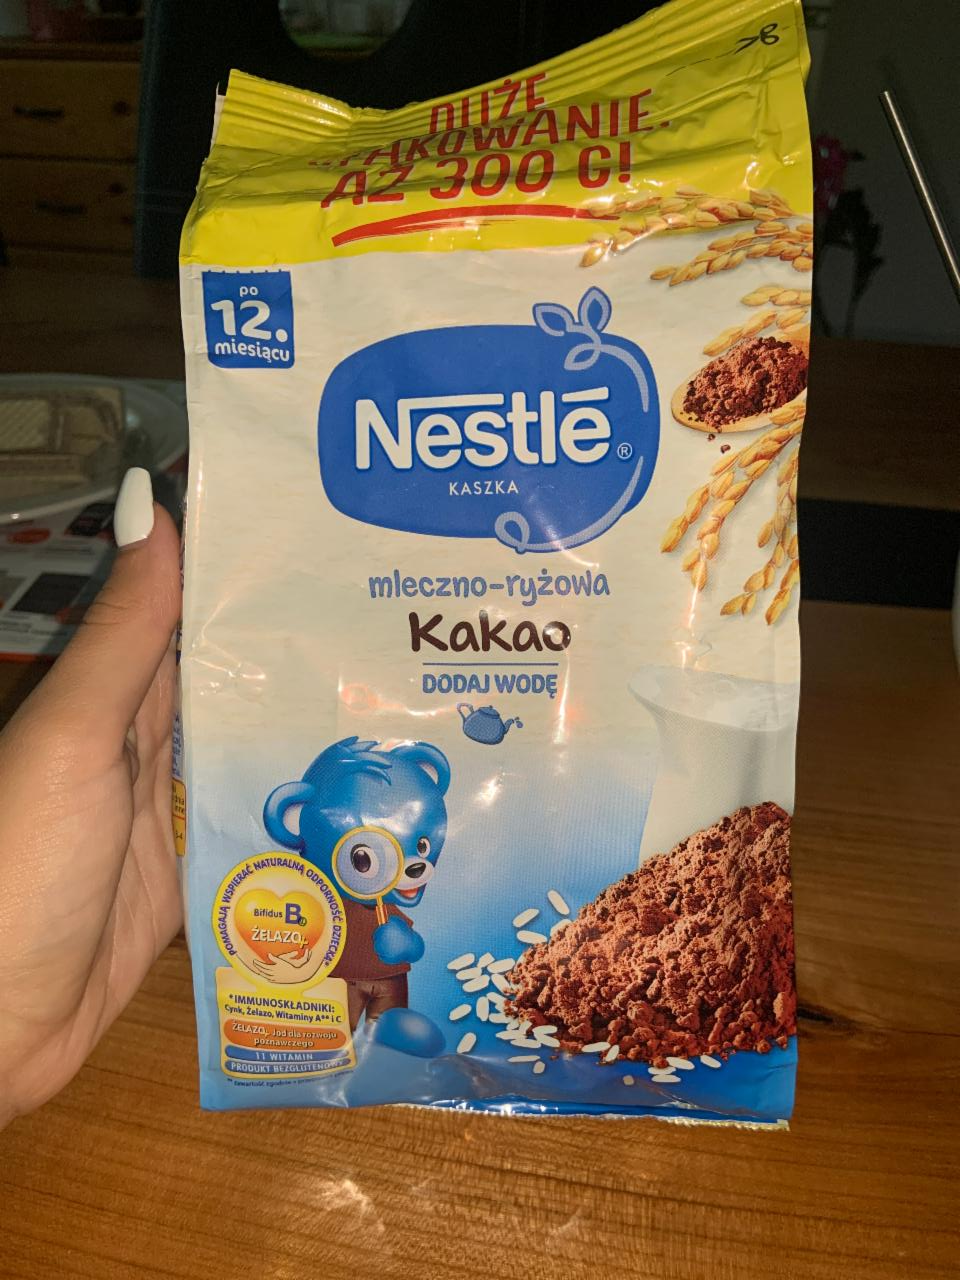 Fotografie - Nestlé kaszka mleczno-ryżowa Kakao